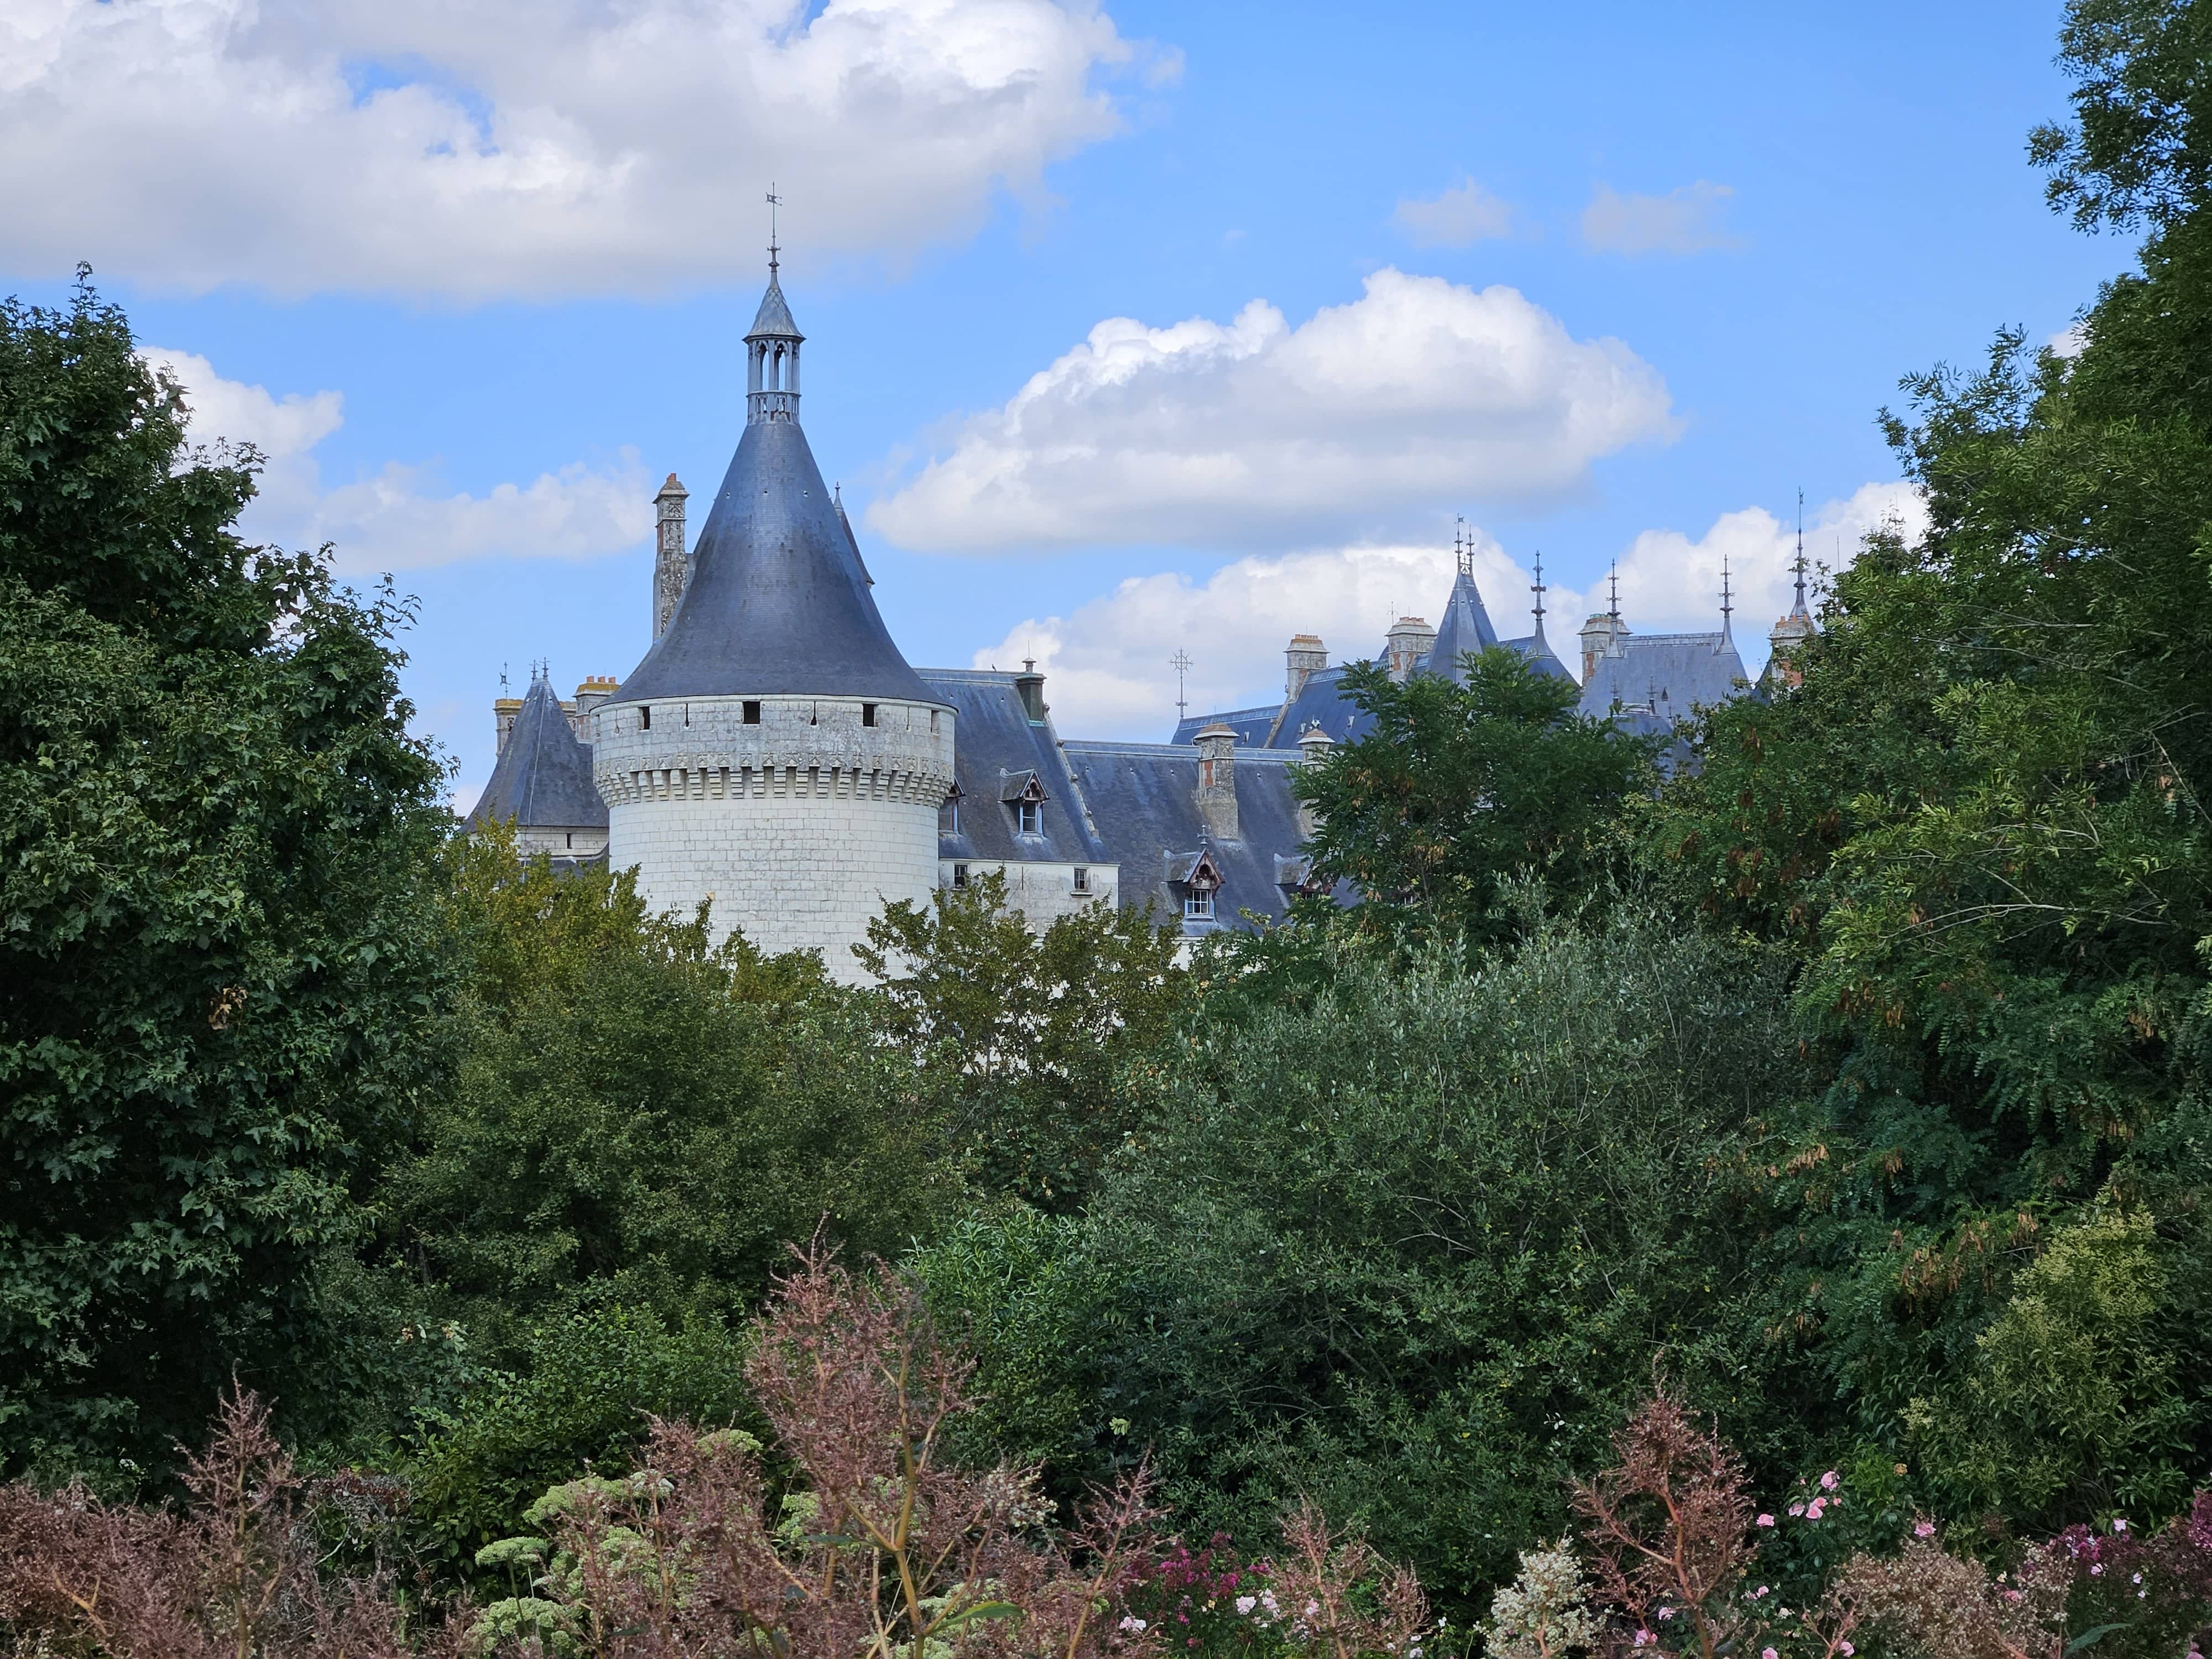 Circuit pour visiter les Châteaux de la Loire à vélo en 5 jours